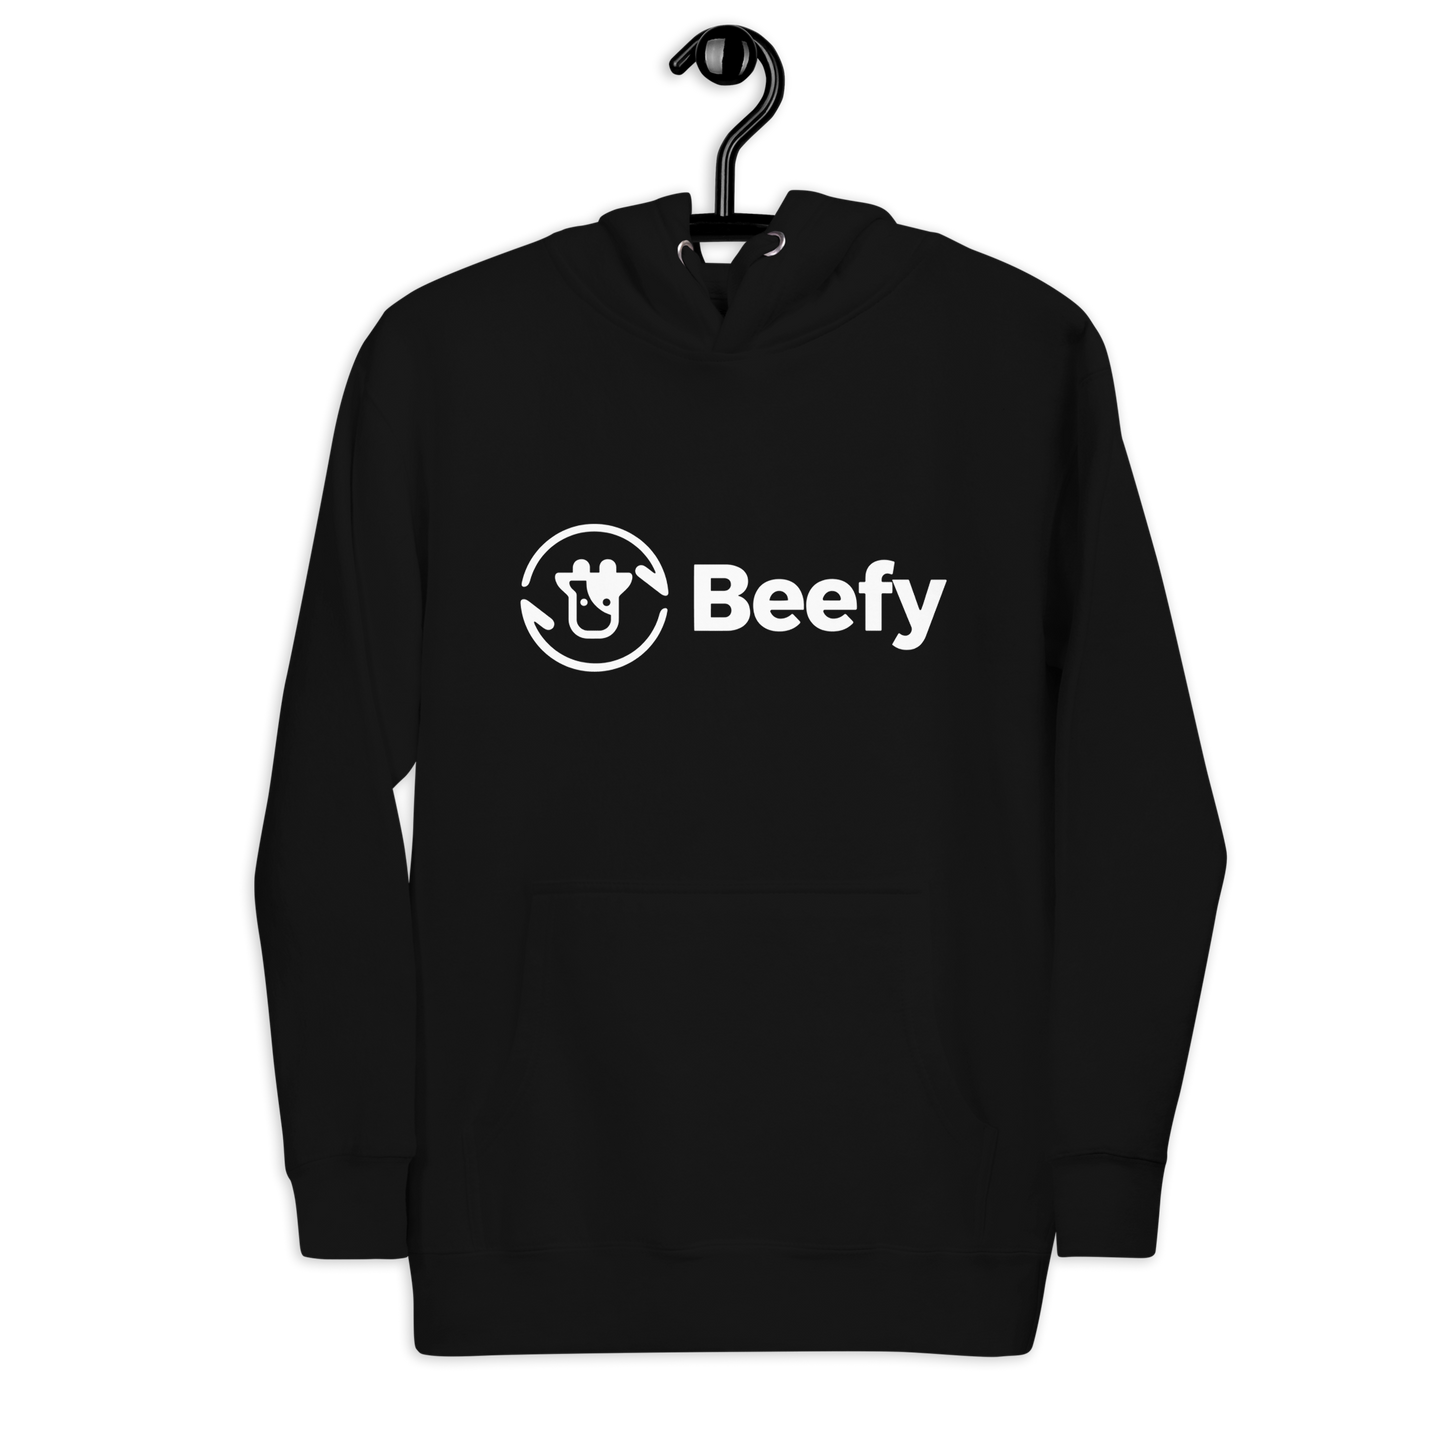 Basic black Beefy hoodie